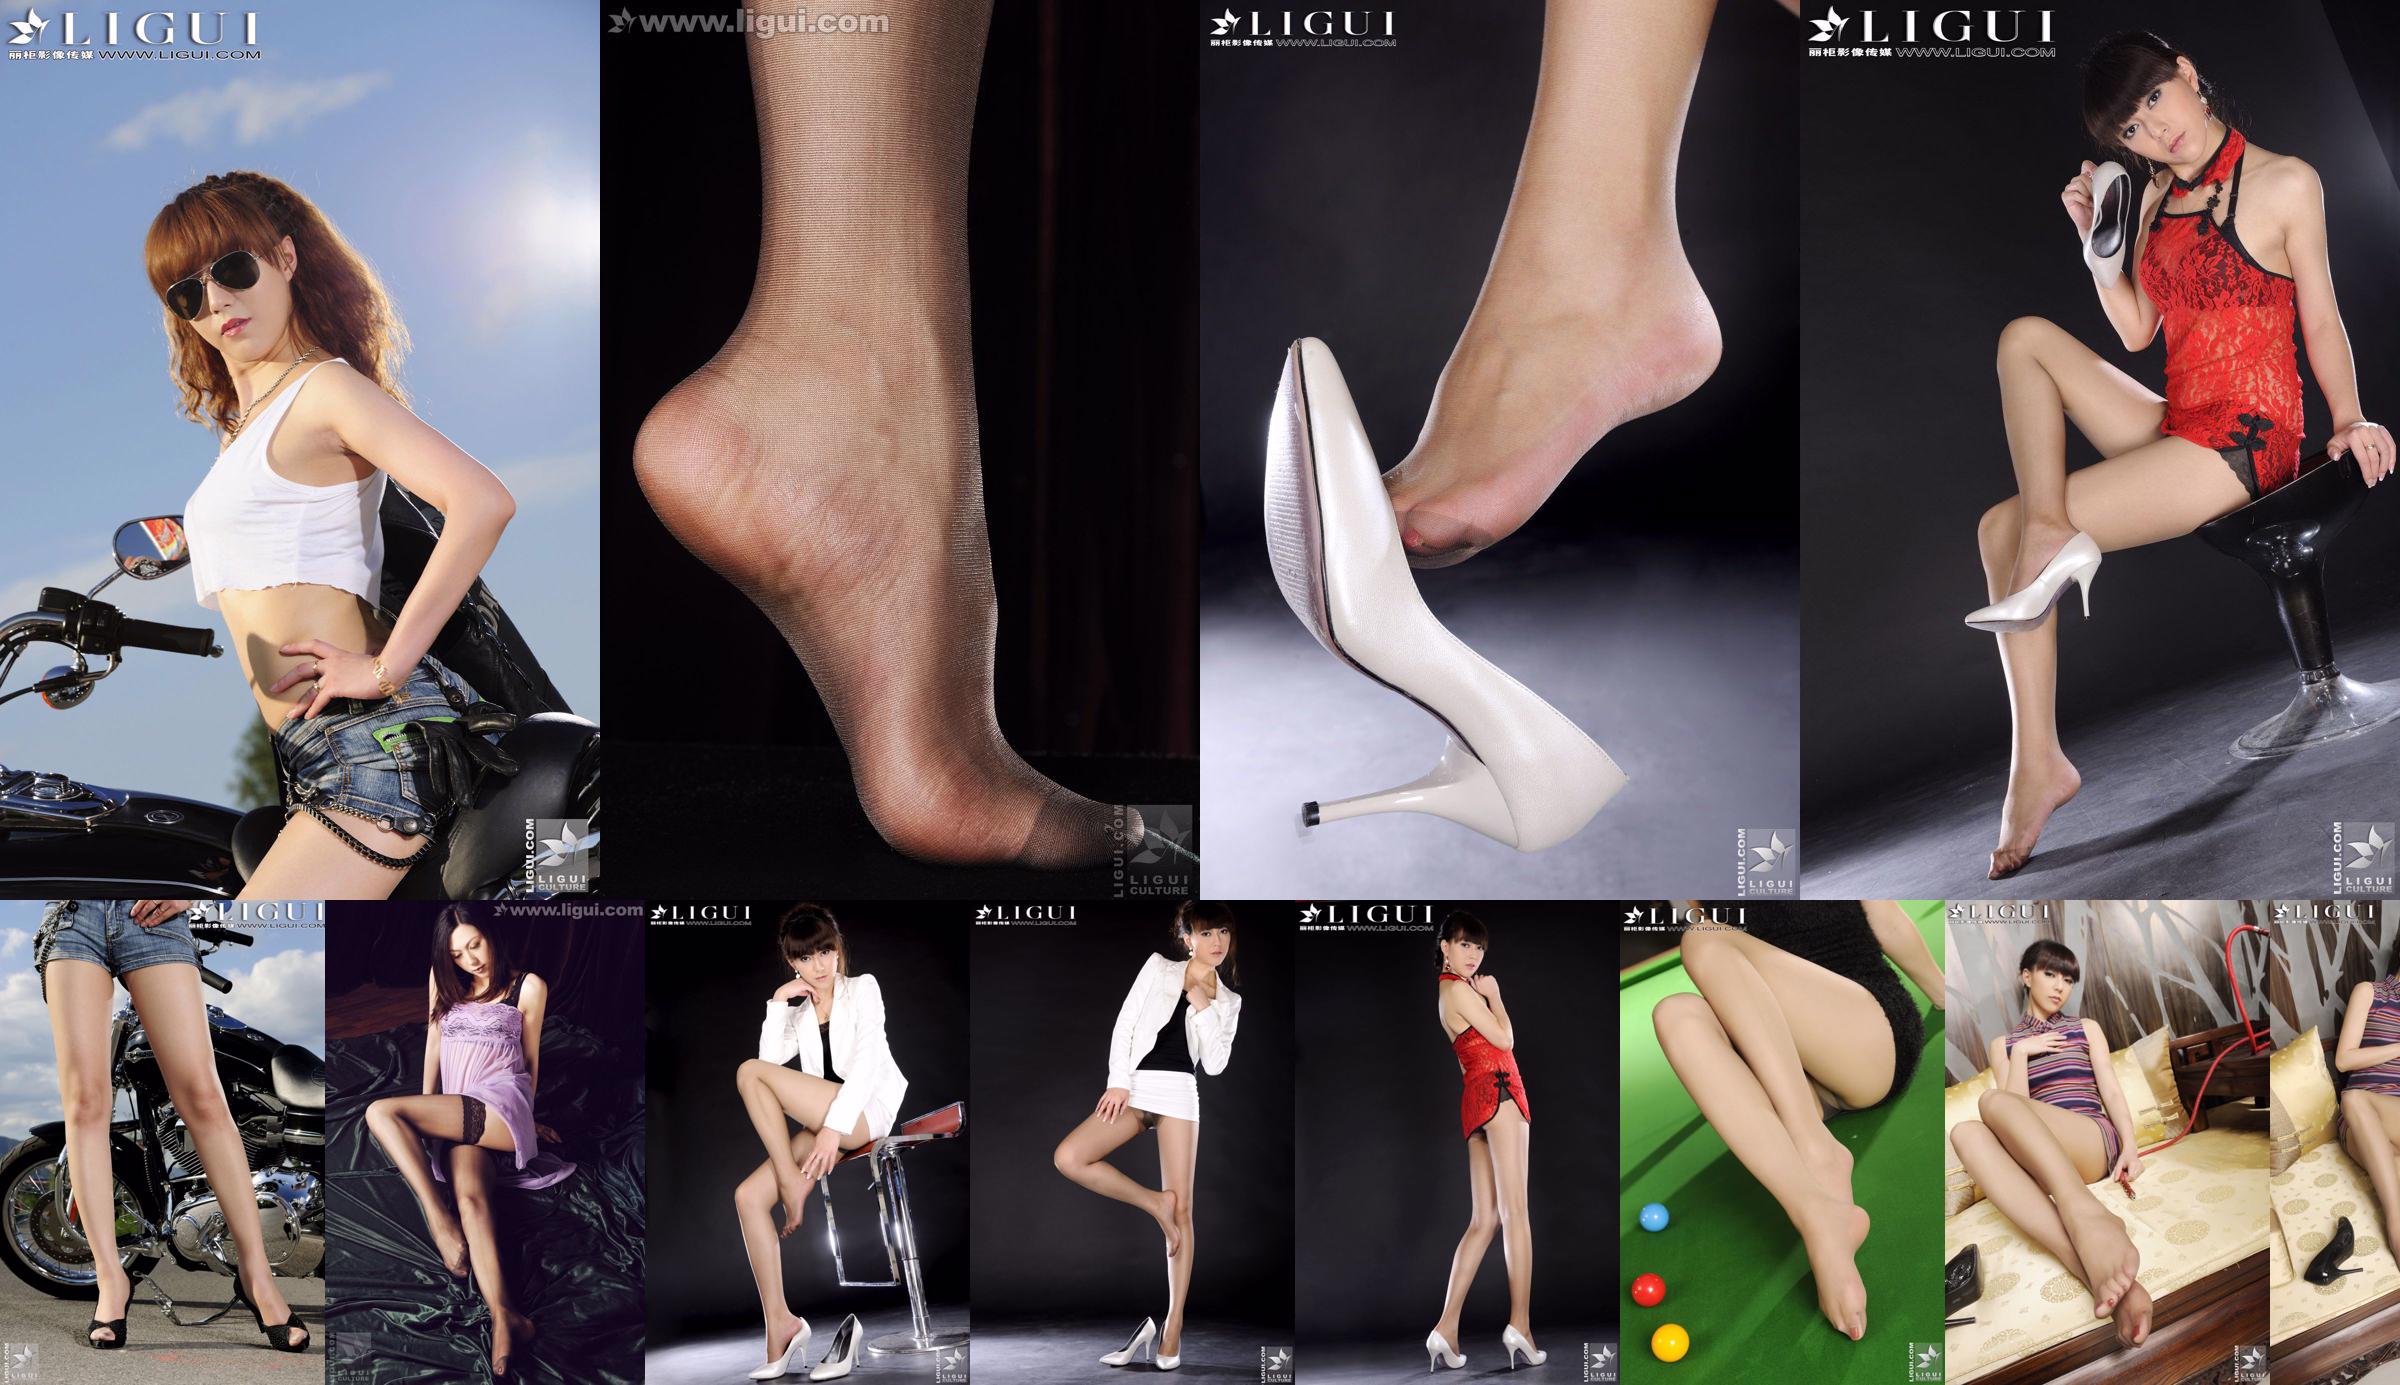 Модель Черри "Новая милость мира моды" [丽 柜 LiGui] Фотография красивых ног и нефритовых ступней. No.f81ed9 Страница 4